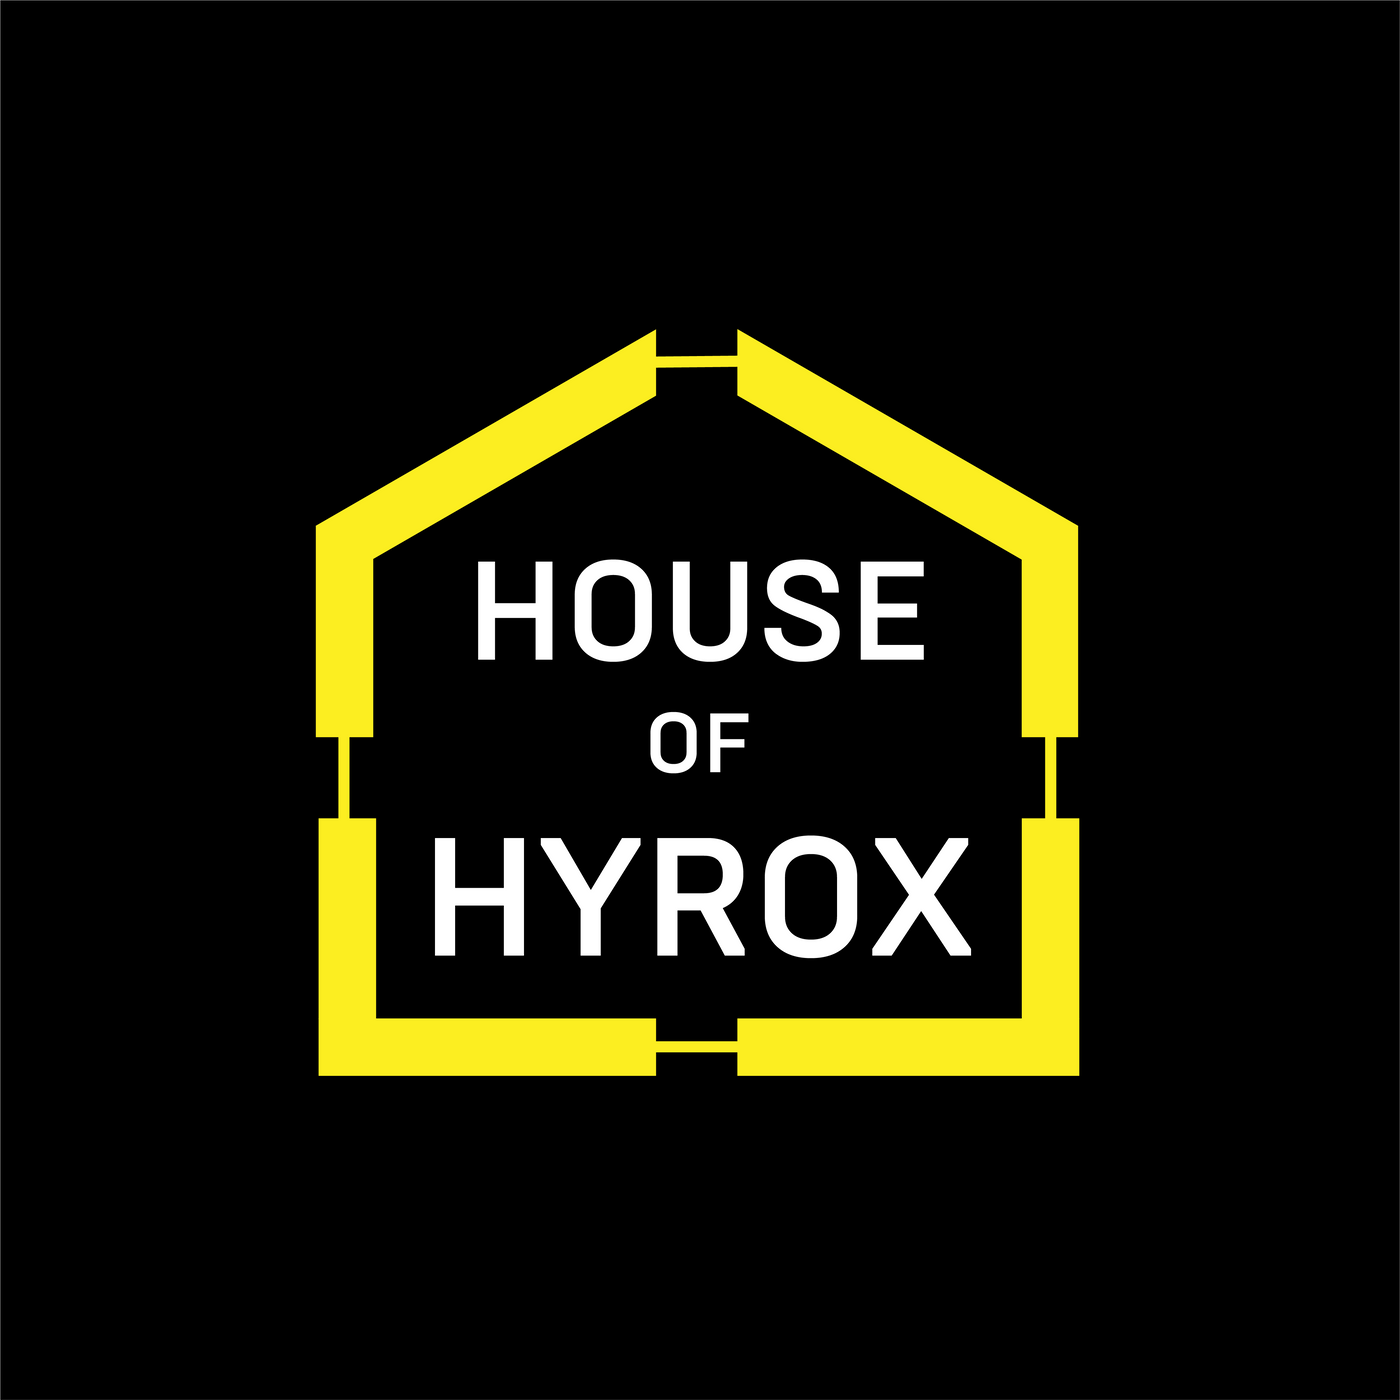 HOUSE OF HYROX 6 WEEK BODY TRANSFORMATION